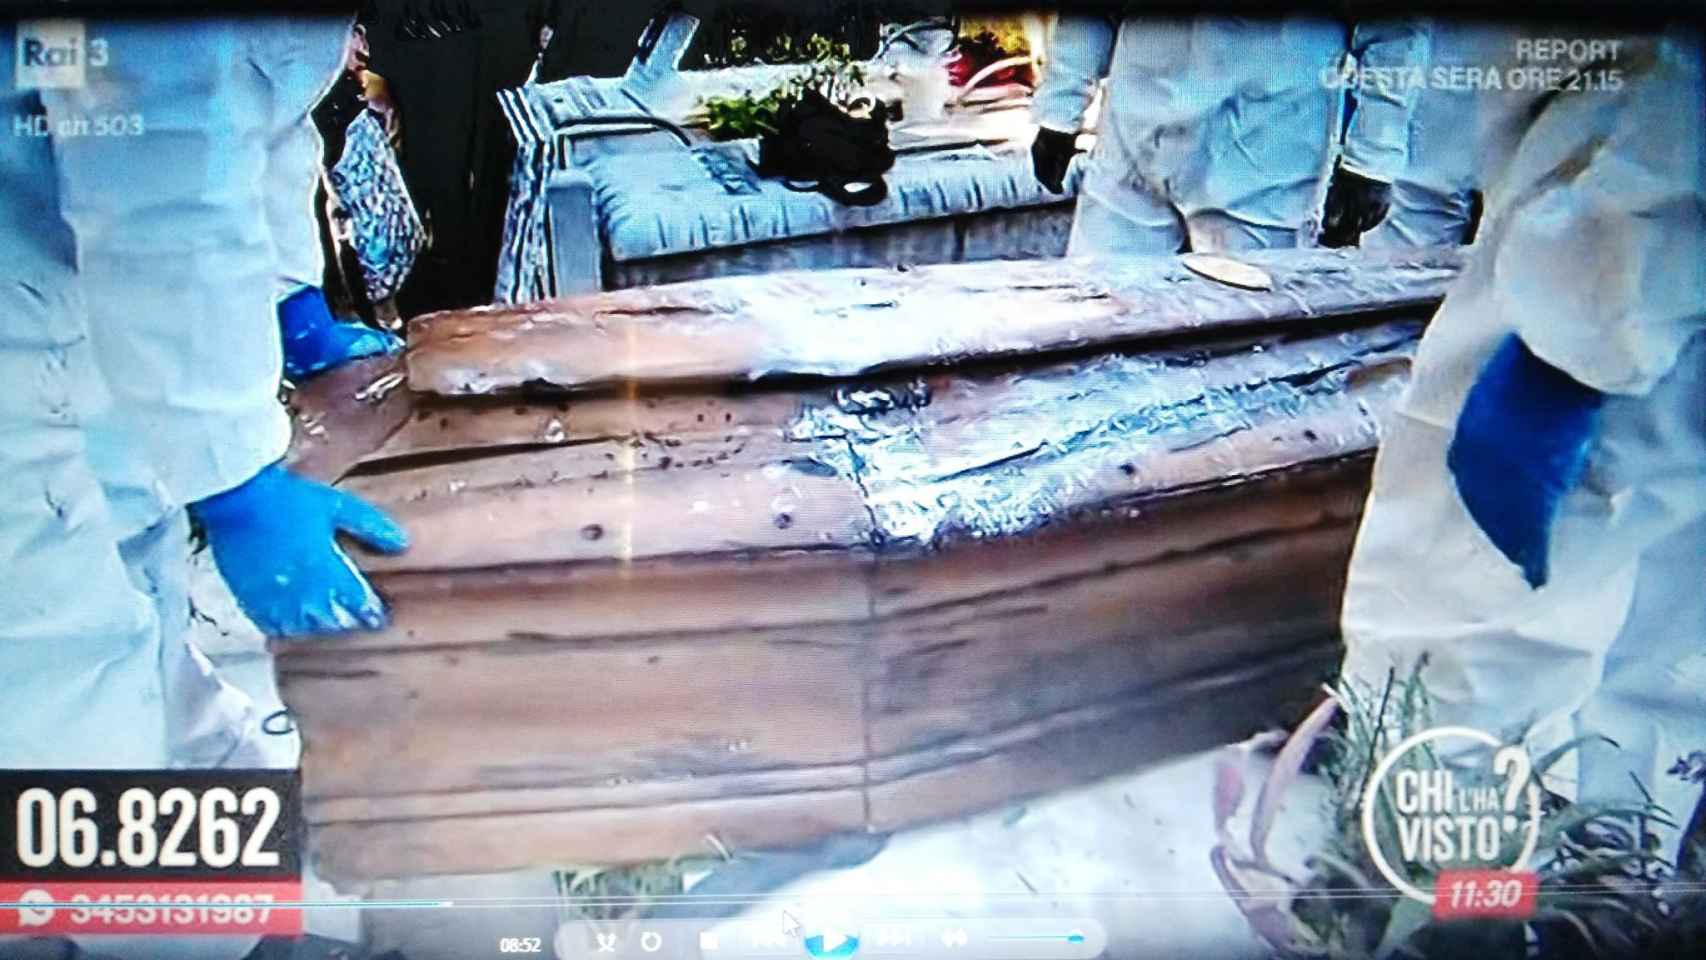 La familia Biondo en la exhumación del cadáver de su hijo.